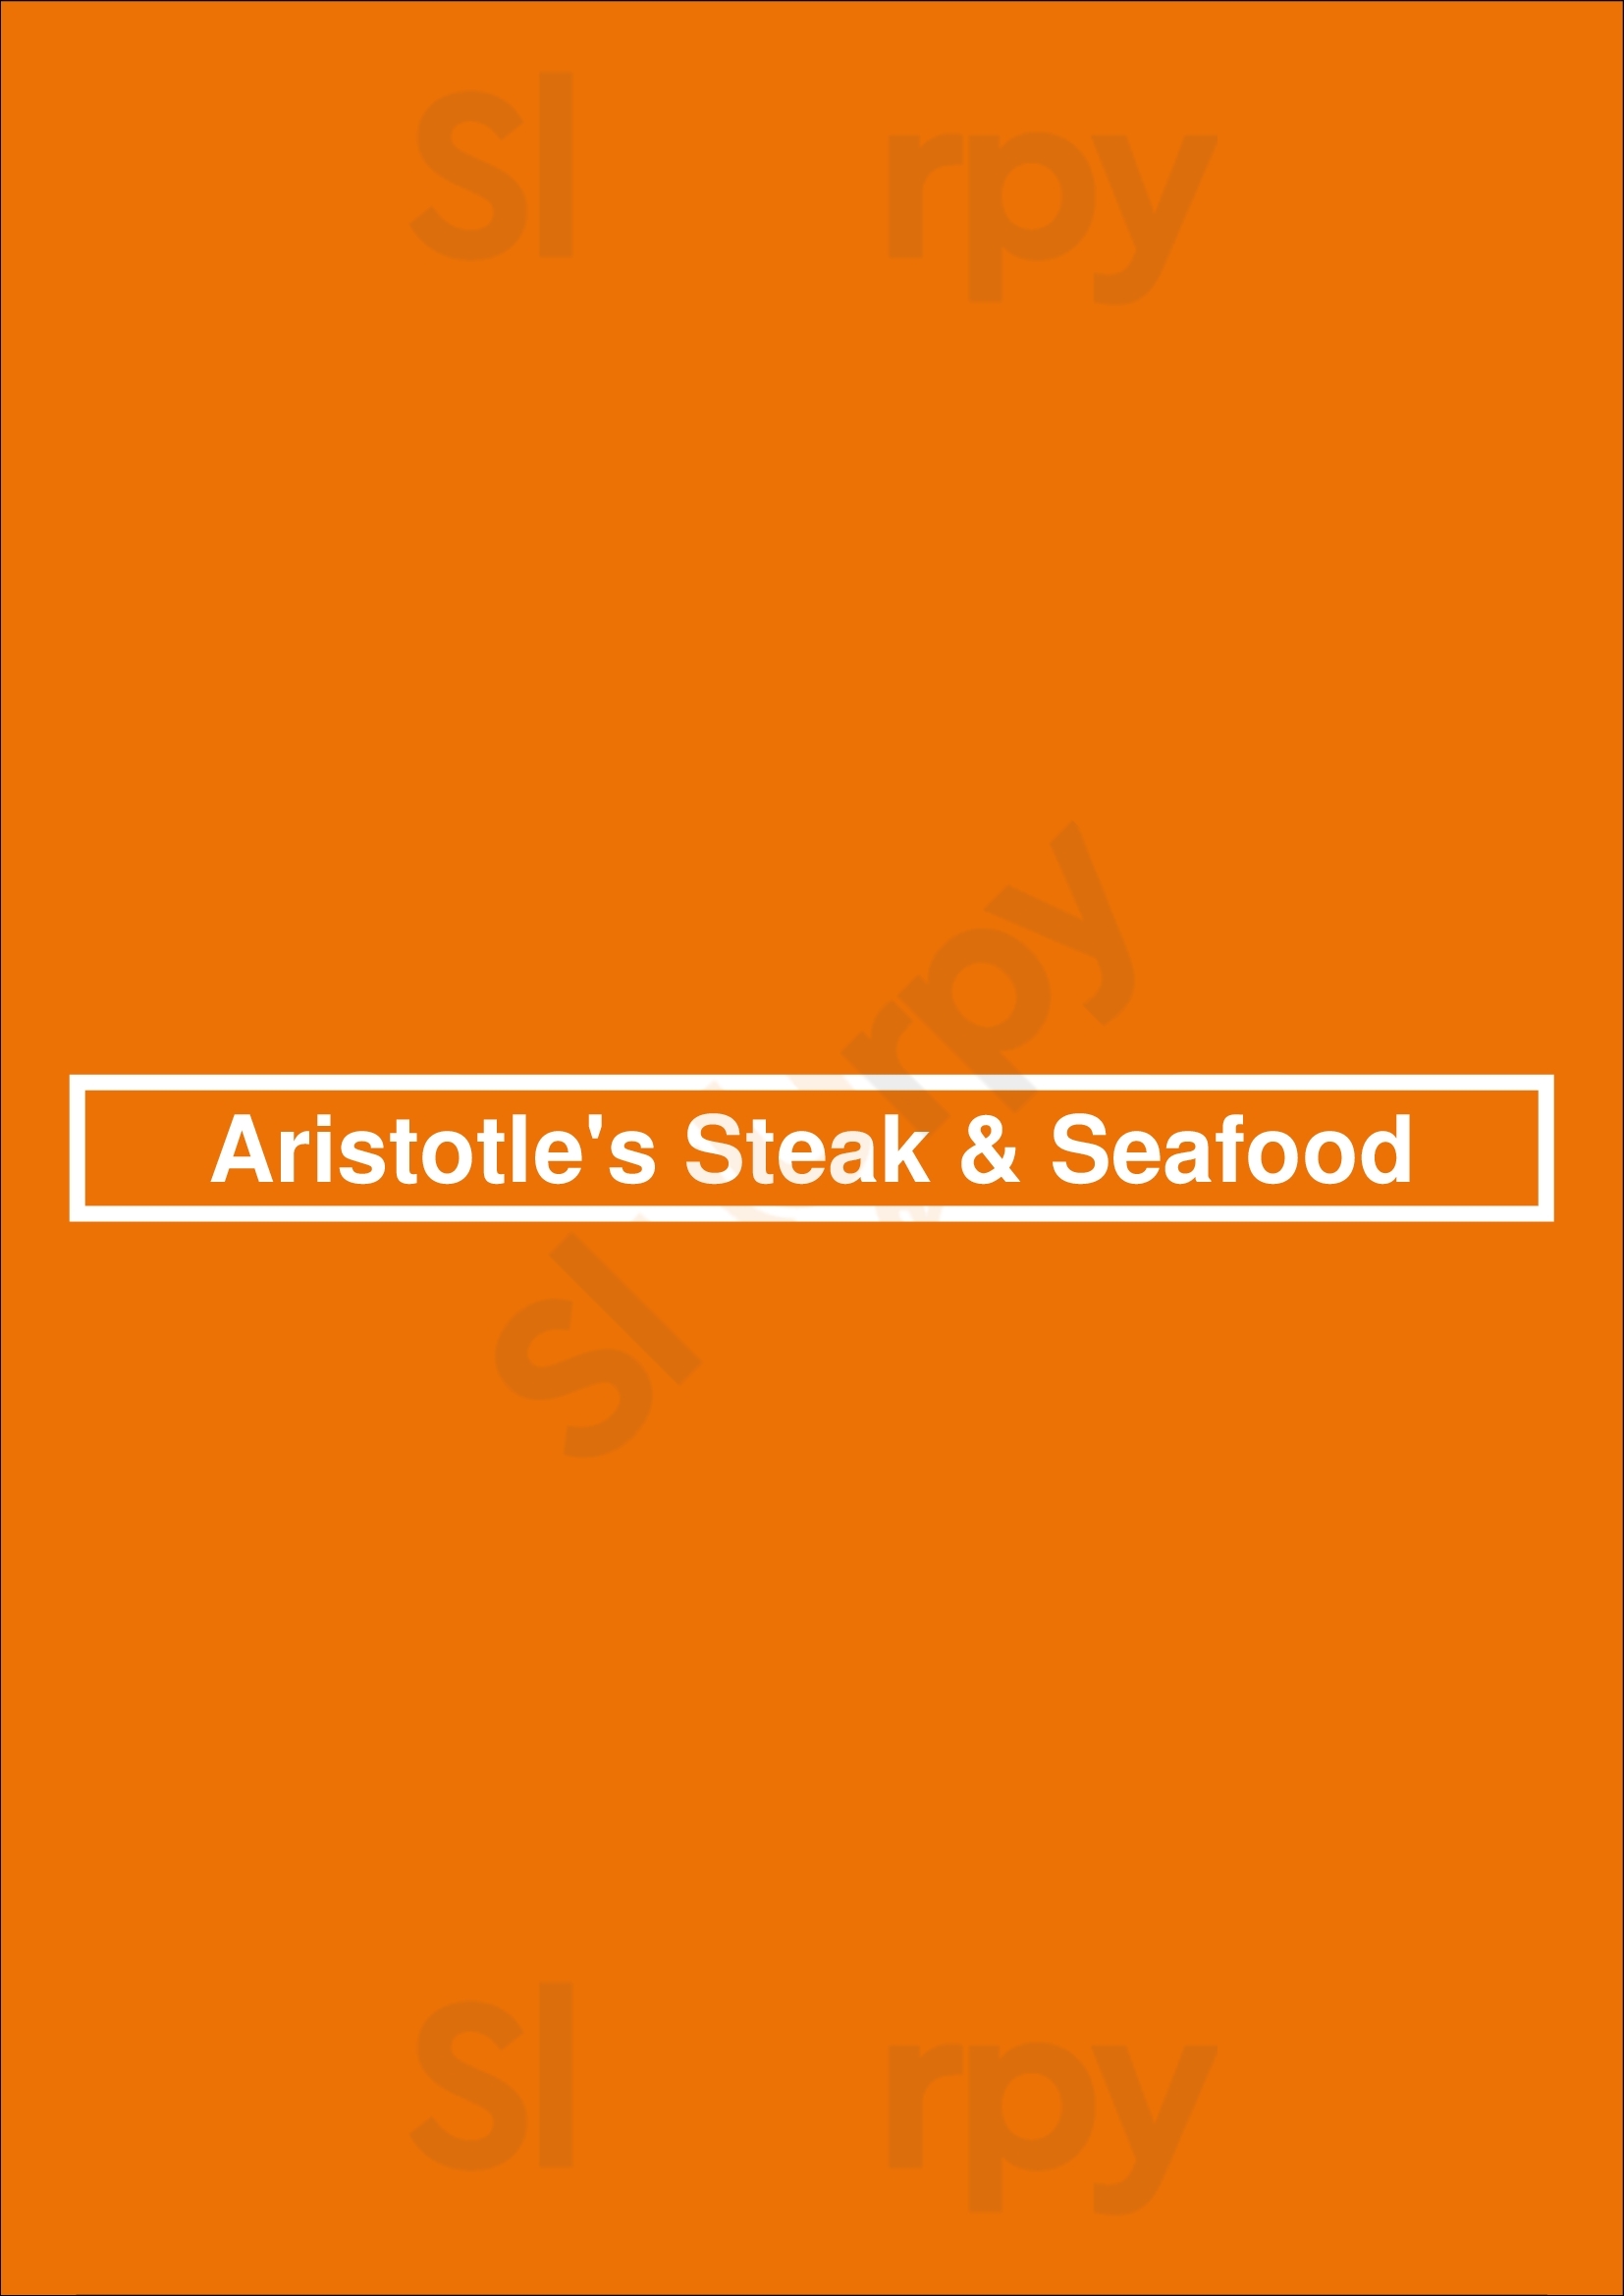 Aristotle's Steak & Seafood Mississauga Menu - 1